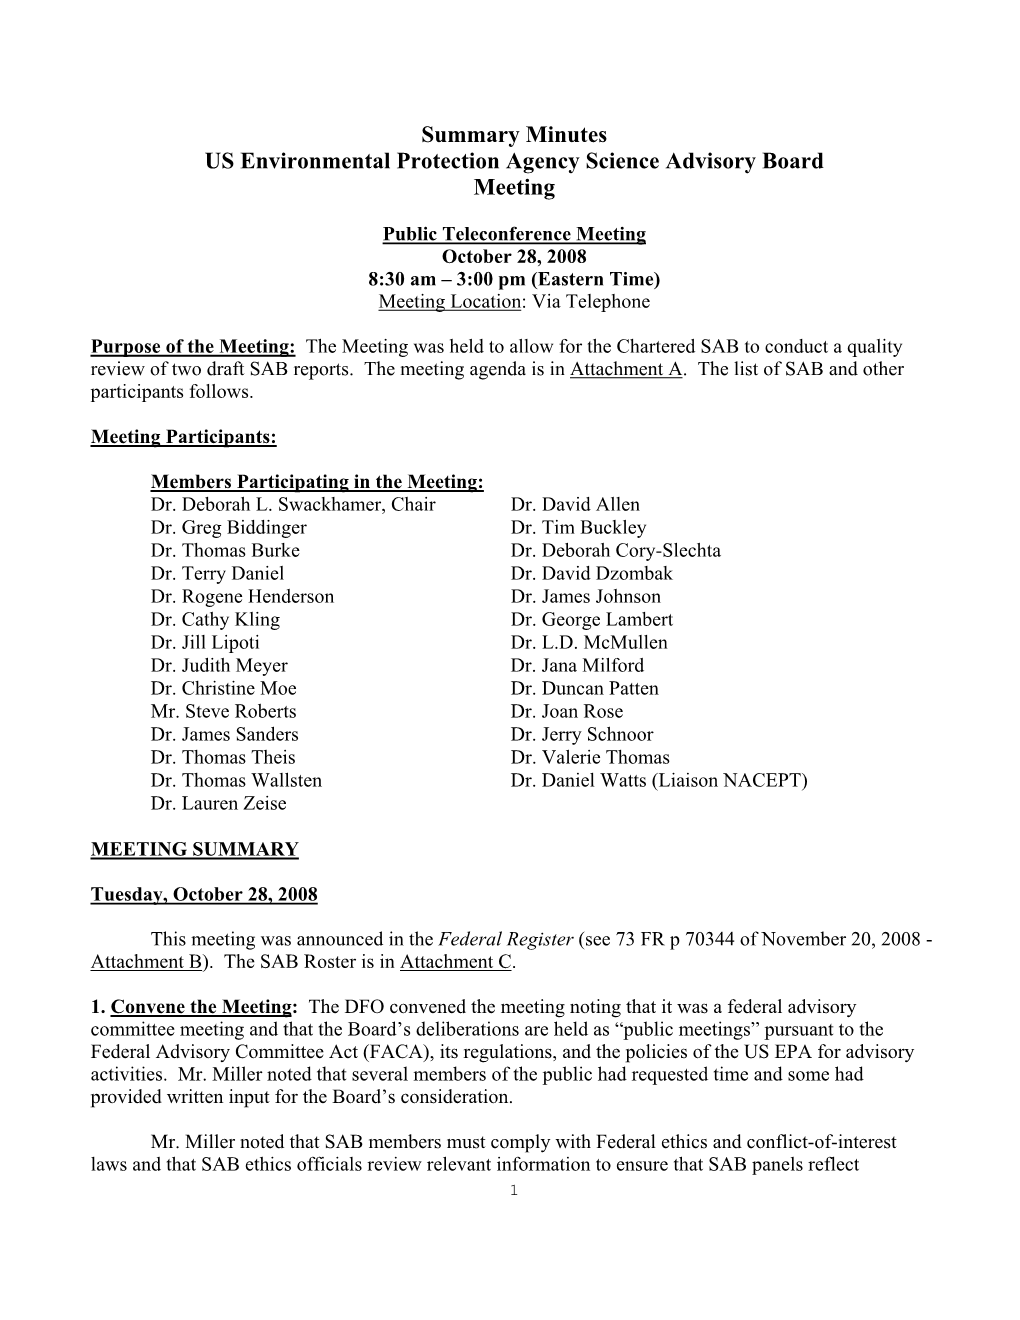 Summary Minutes of EPA Science Advisory Board October 28, 2008